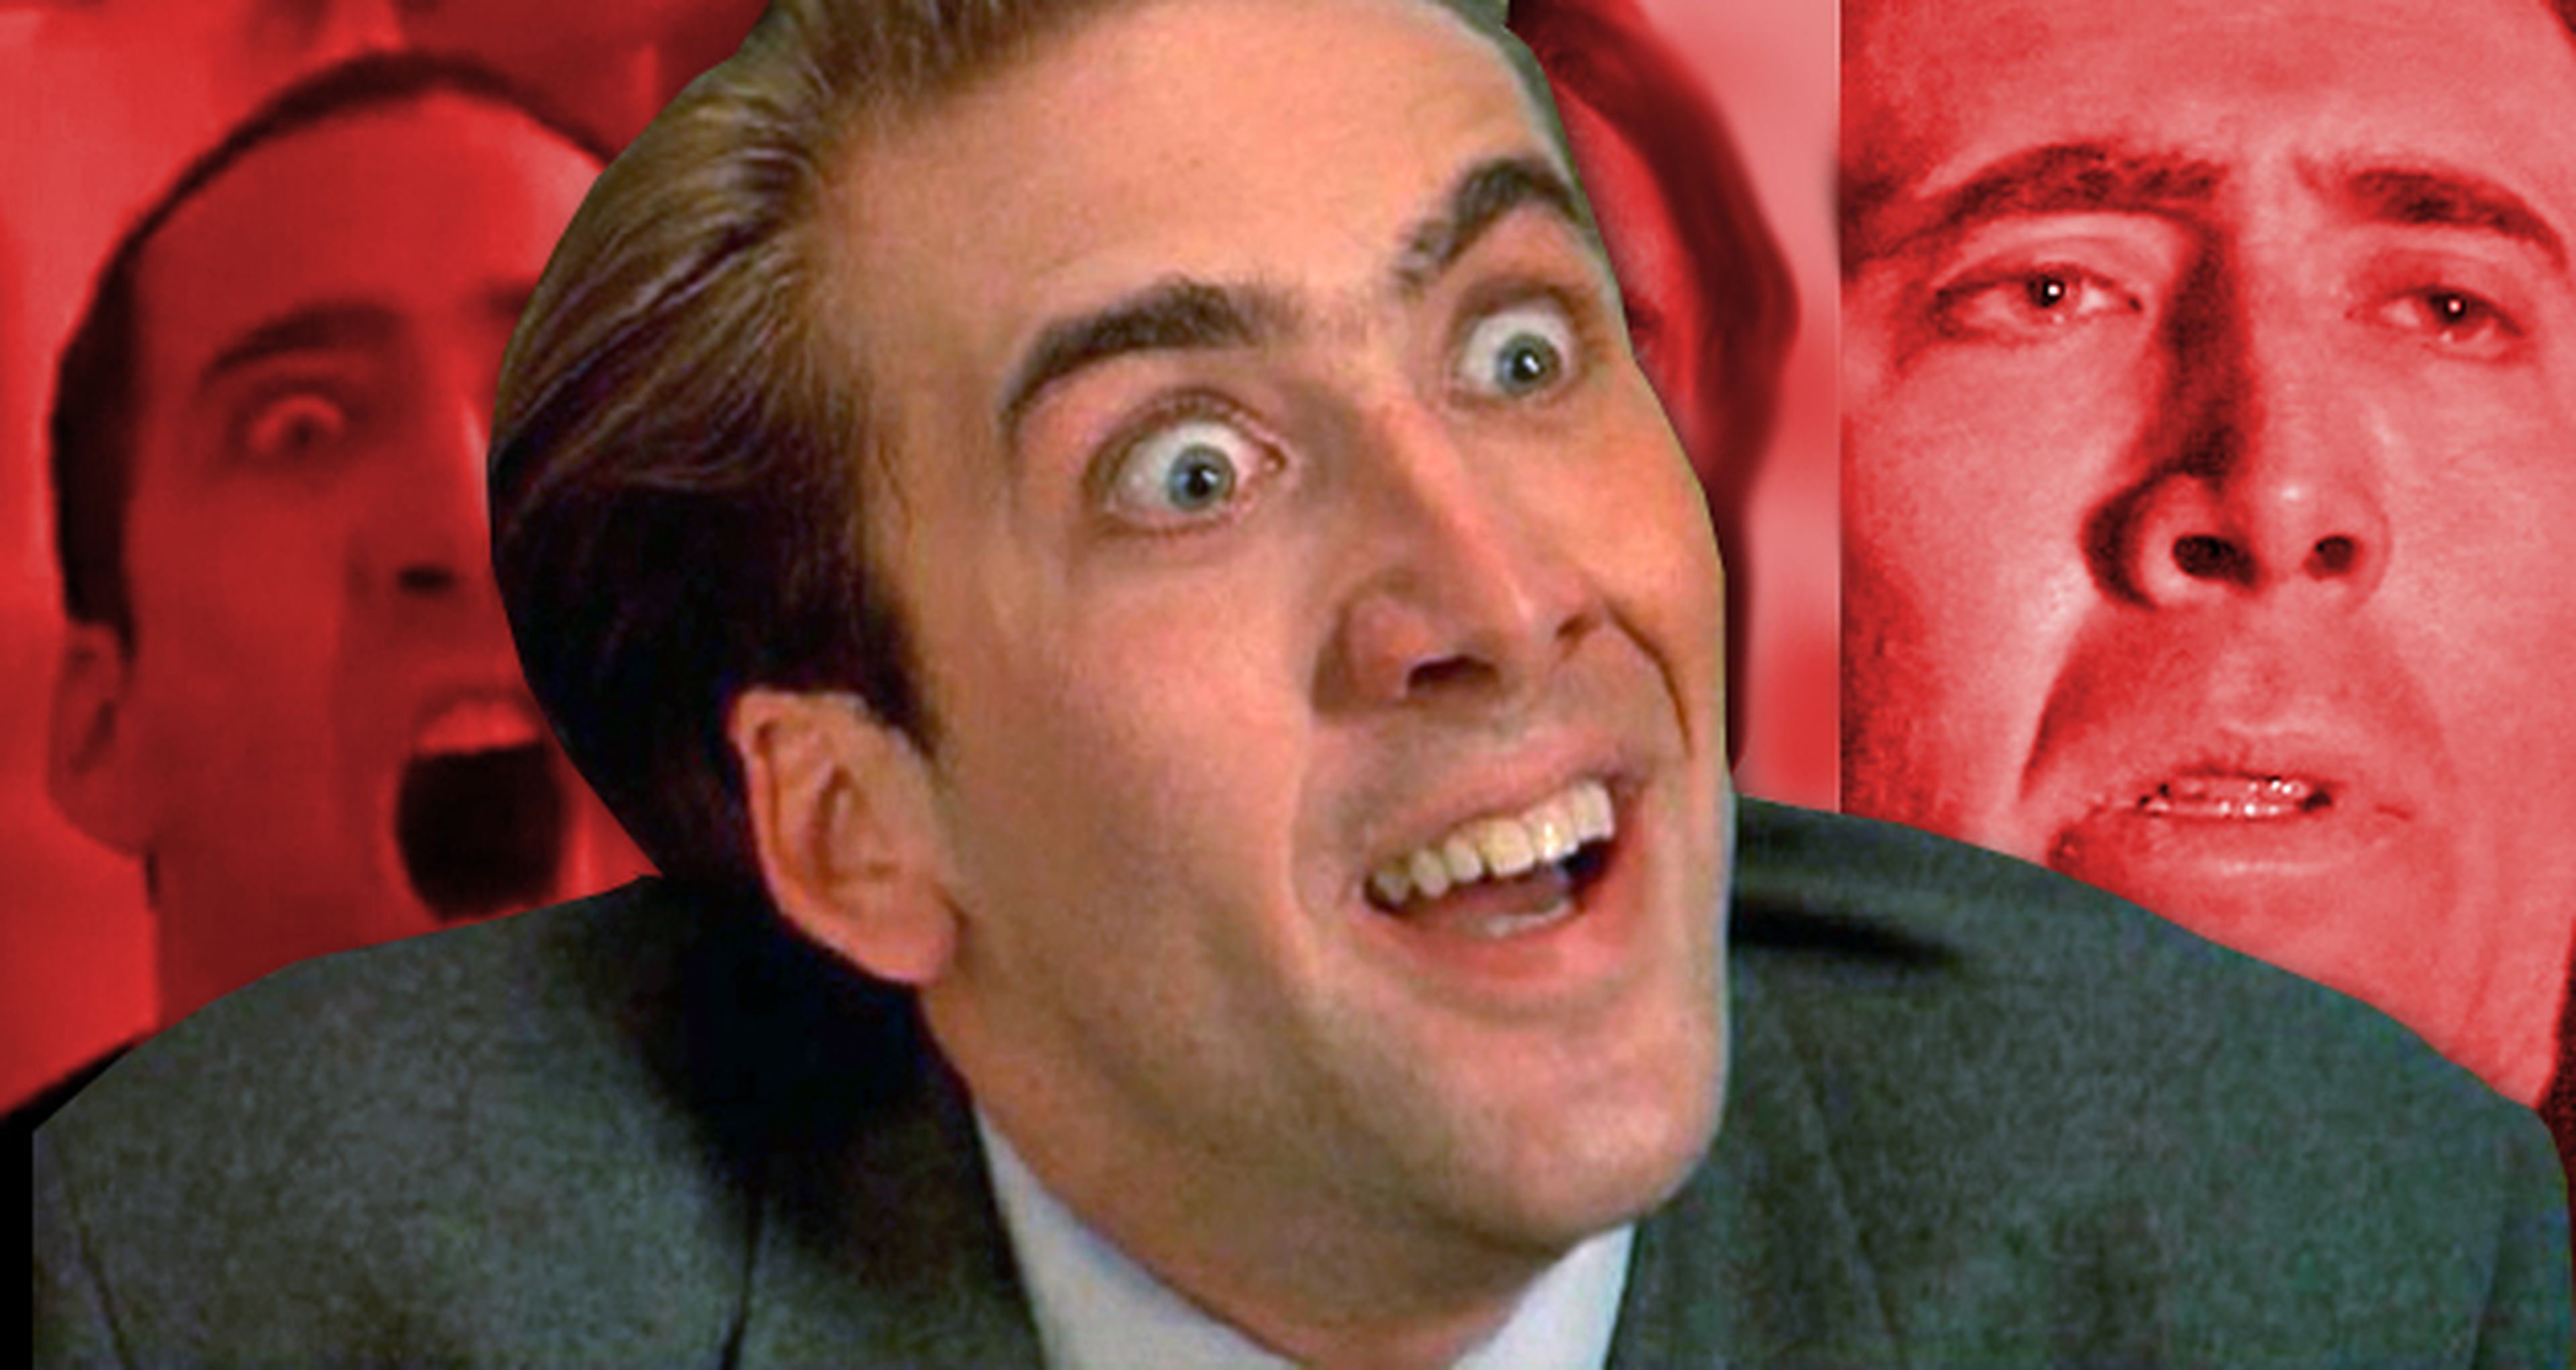 ¿Por qué no mola Nicolas Cage?